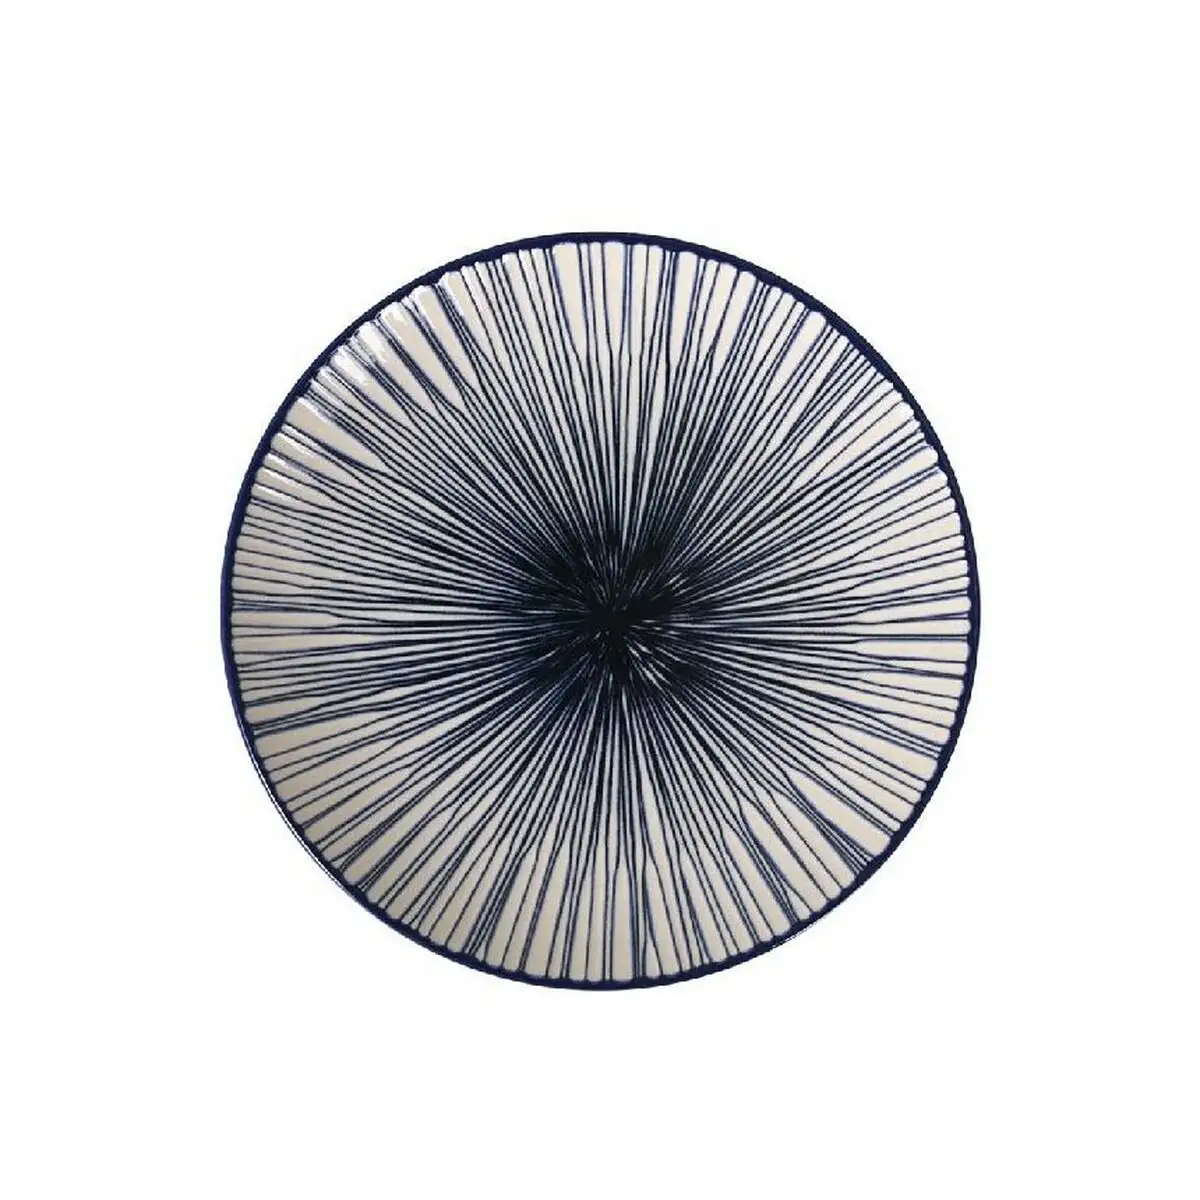 Assiette a dessert la mediterranea monaco bleu porcelaine o 20 x 2 cm_6269. DIAYTAR SENEGAL - L'Art du Shopping Sublime. Naviguez à travers notre catalogue et choisissez parmi des produits qui ajoutent une touche raffinée à votre vie quotidienne.